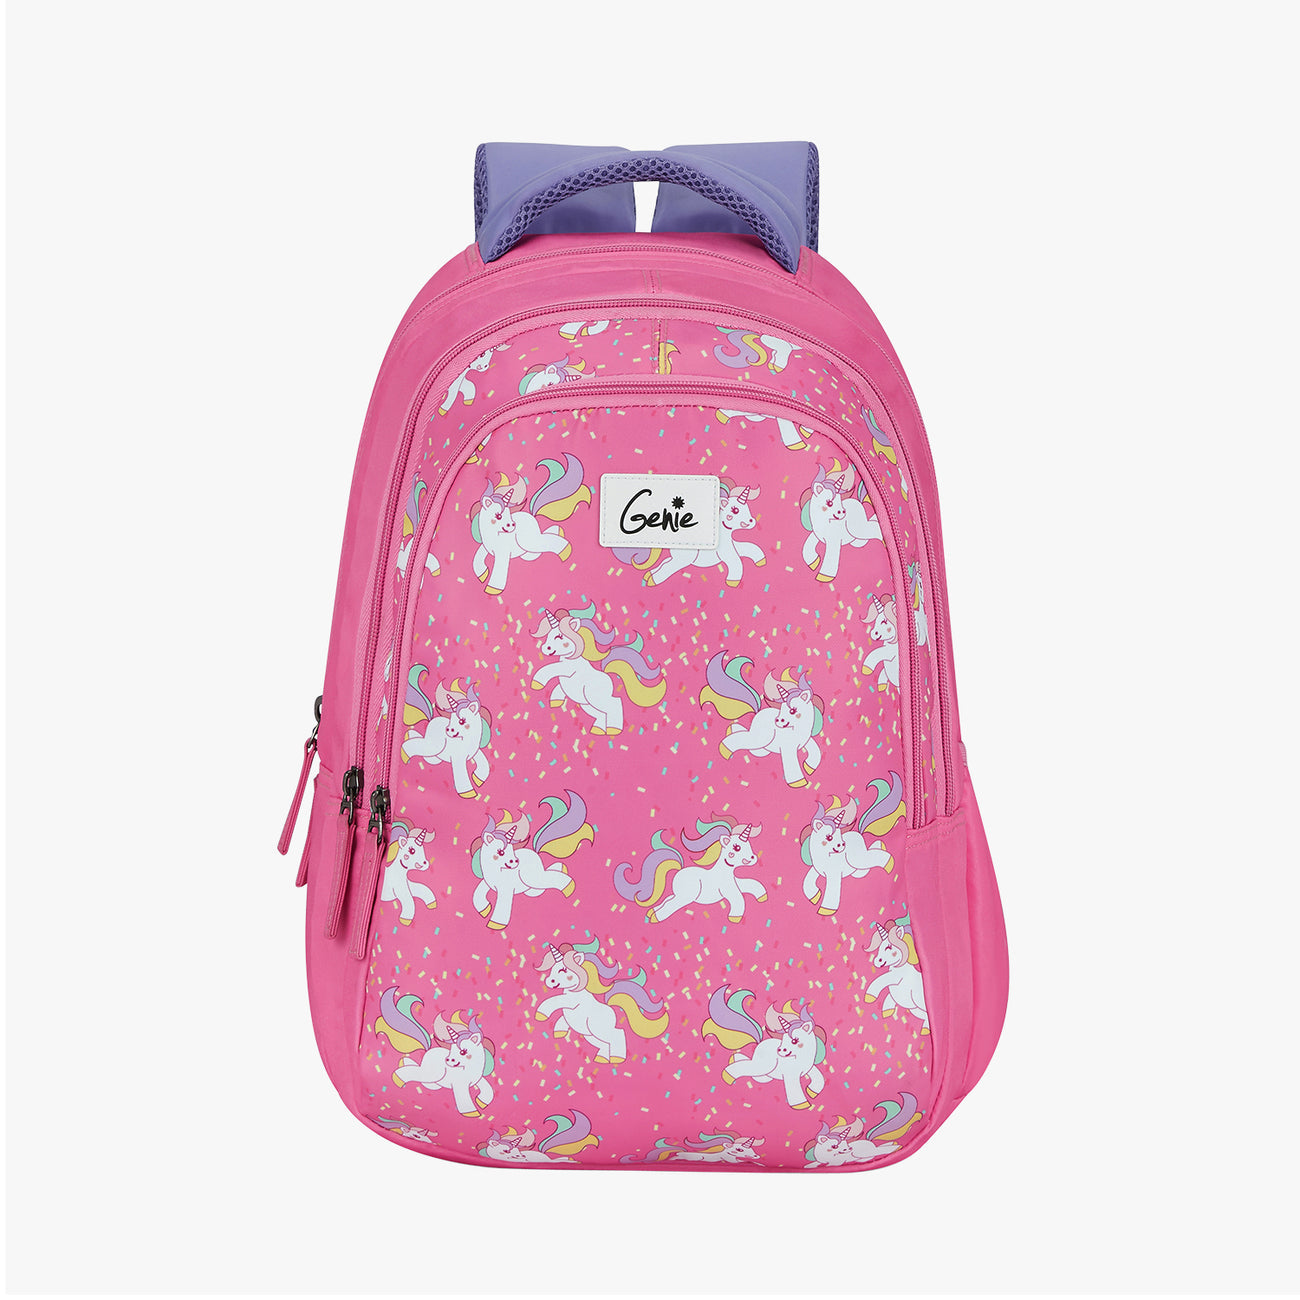 Genie Unicorn 17 Inch Backpack